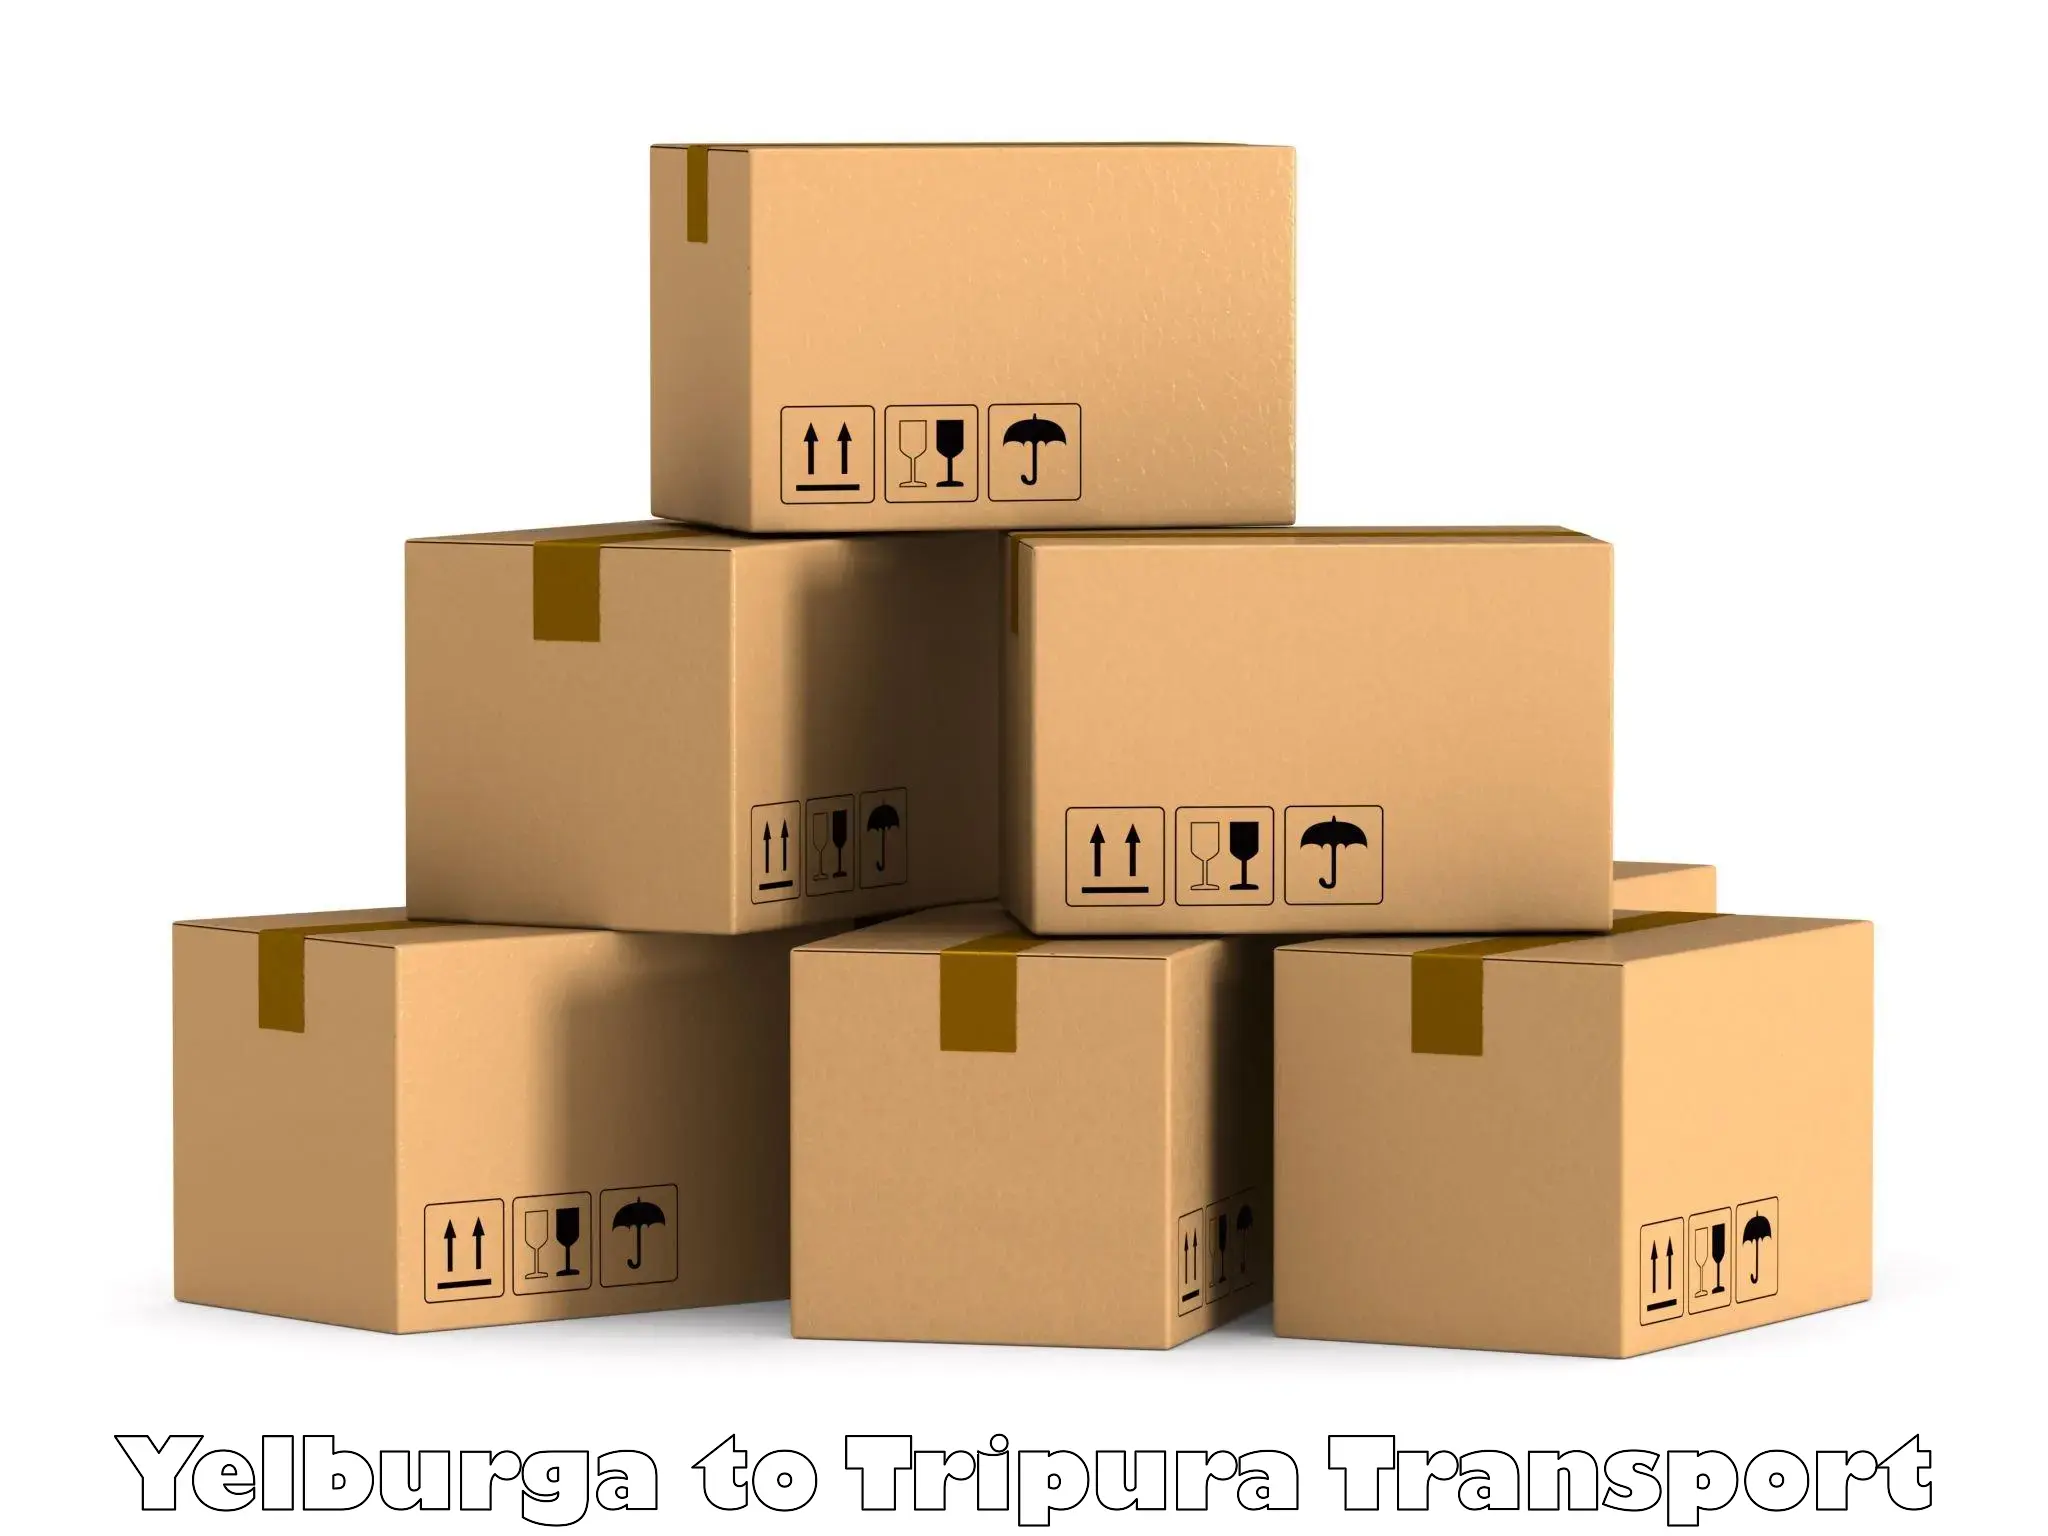 Furniture transport service in Yelburga to Udaipur Tripura